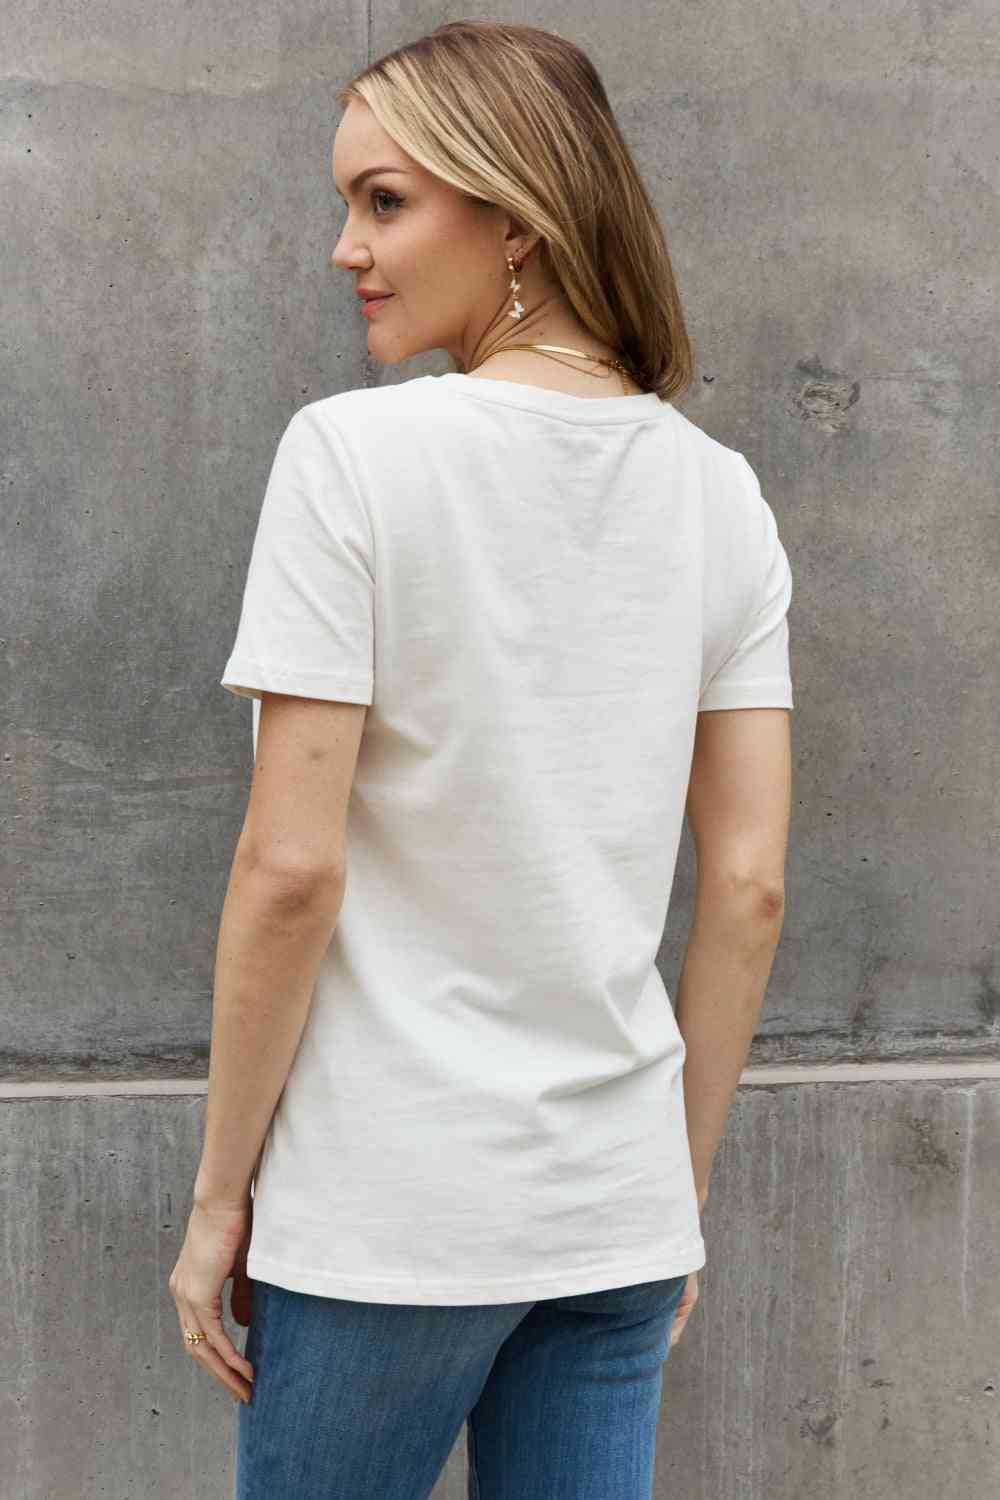 Camiseta de algodón con estampado de calavera de tamaño completo de Simply Love